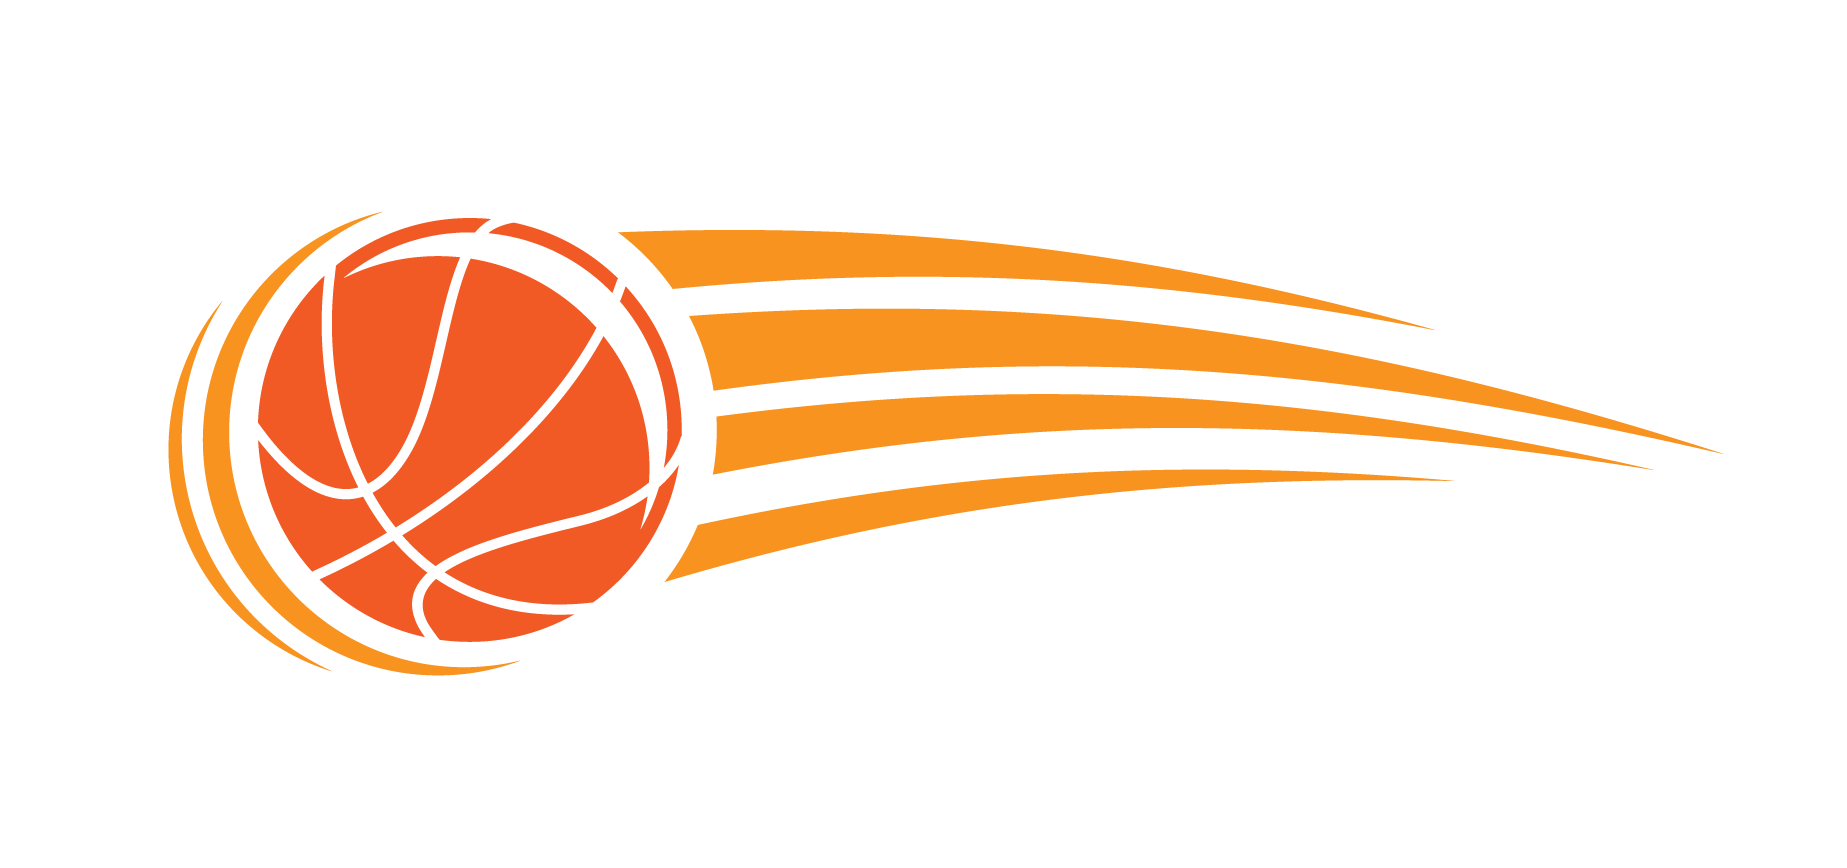 Illustration of a basketball in flight